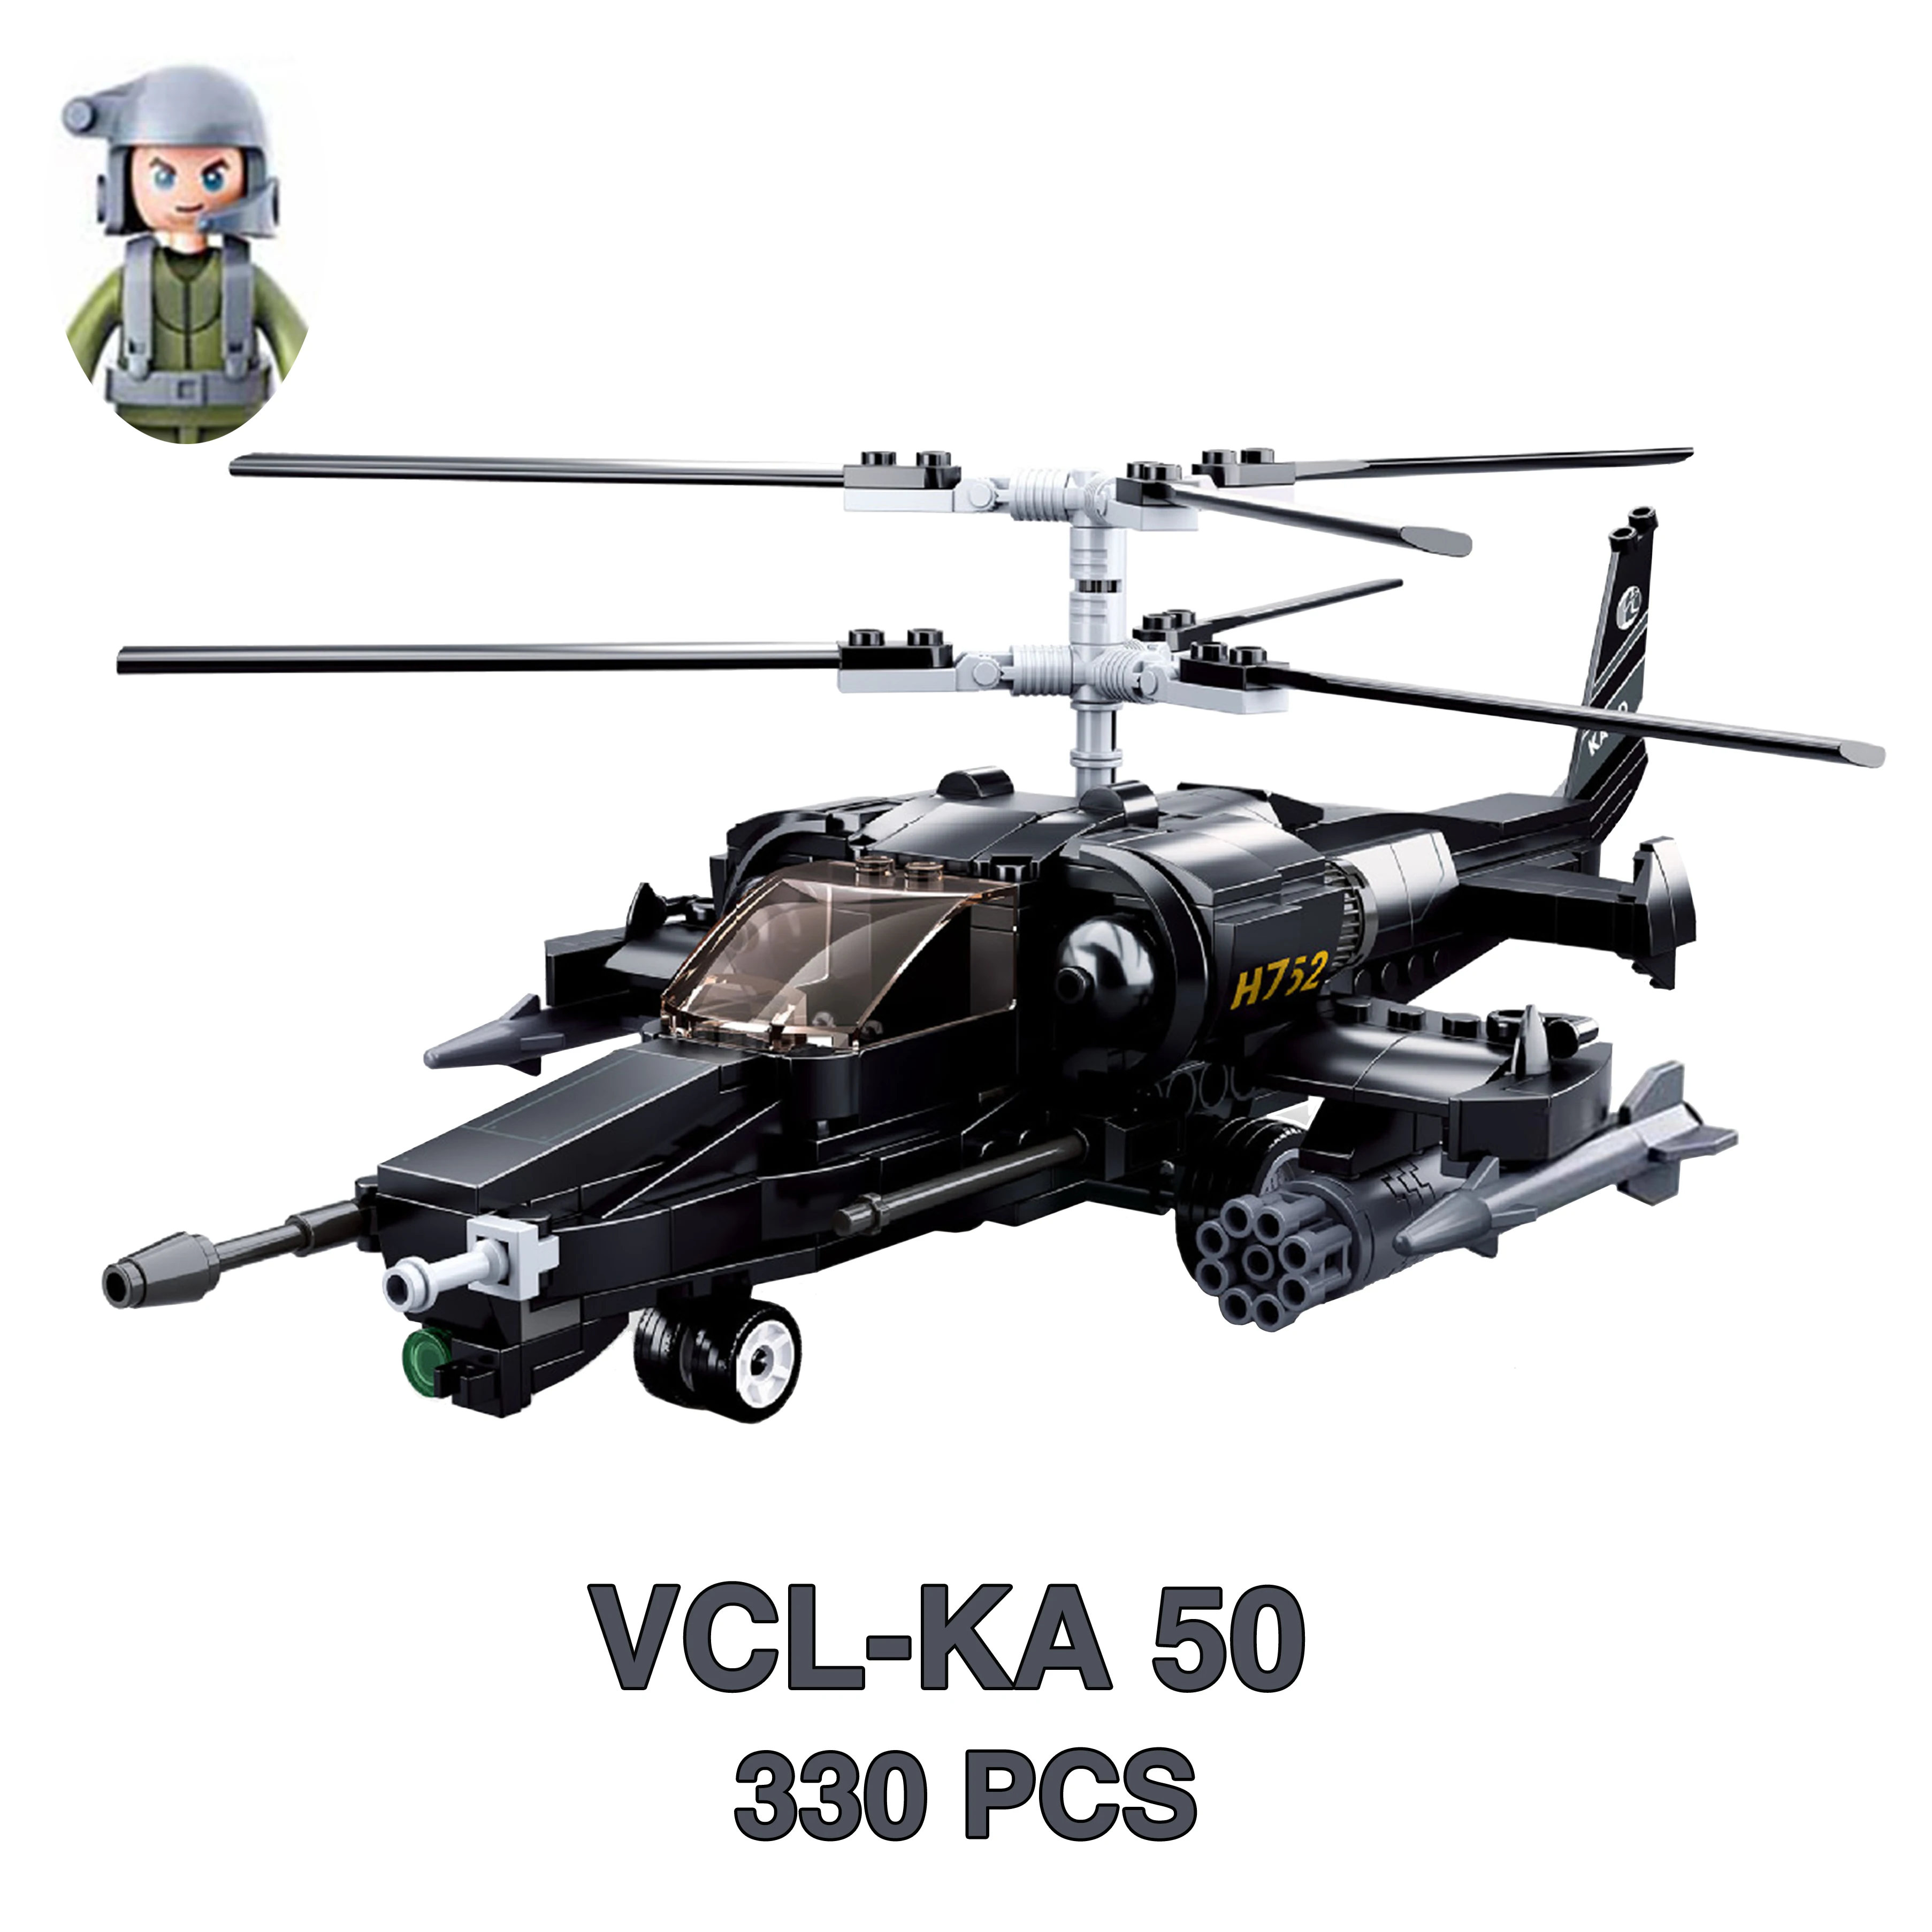 VCL-KA50